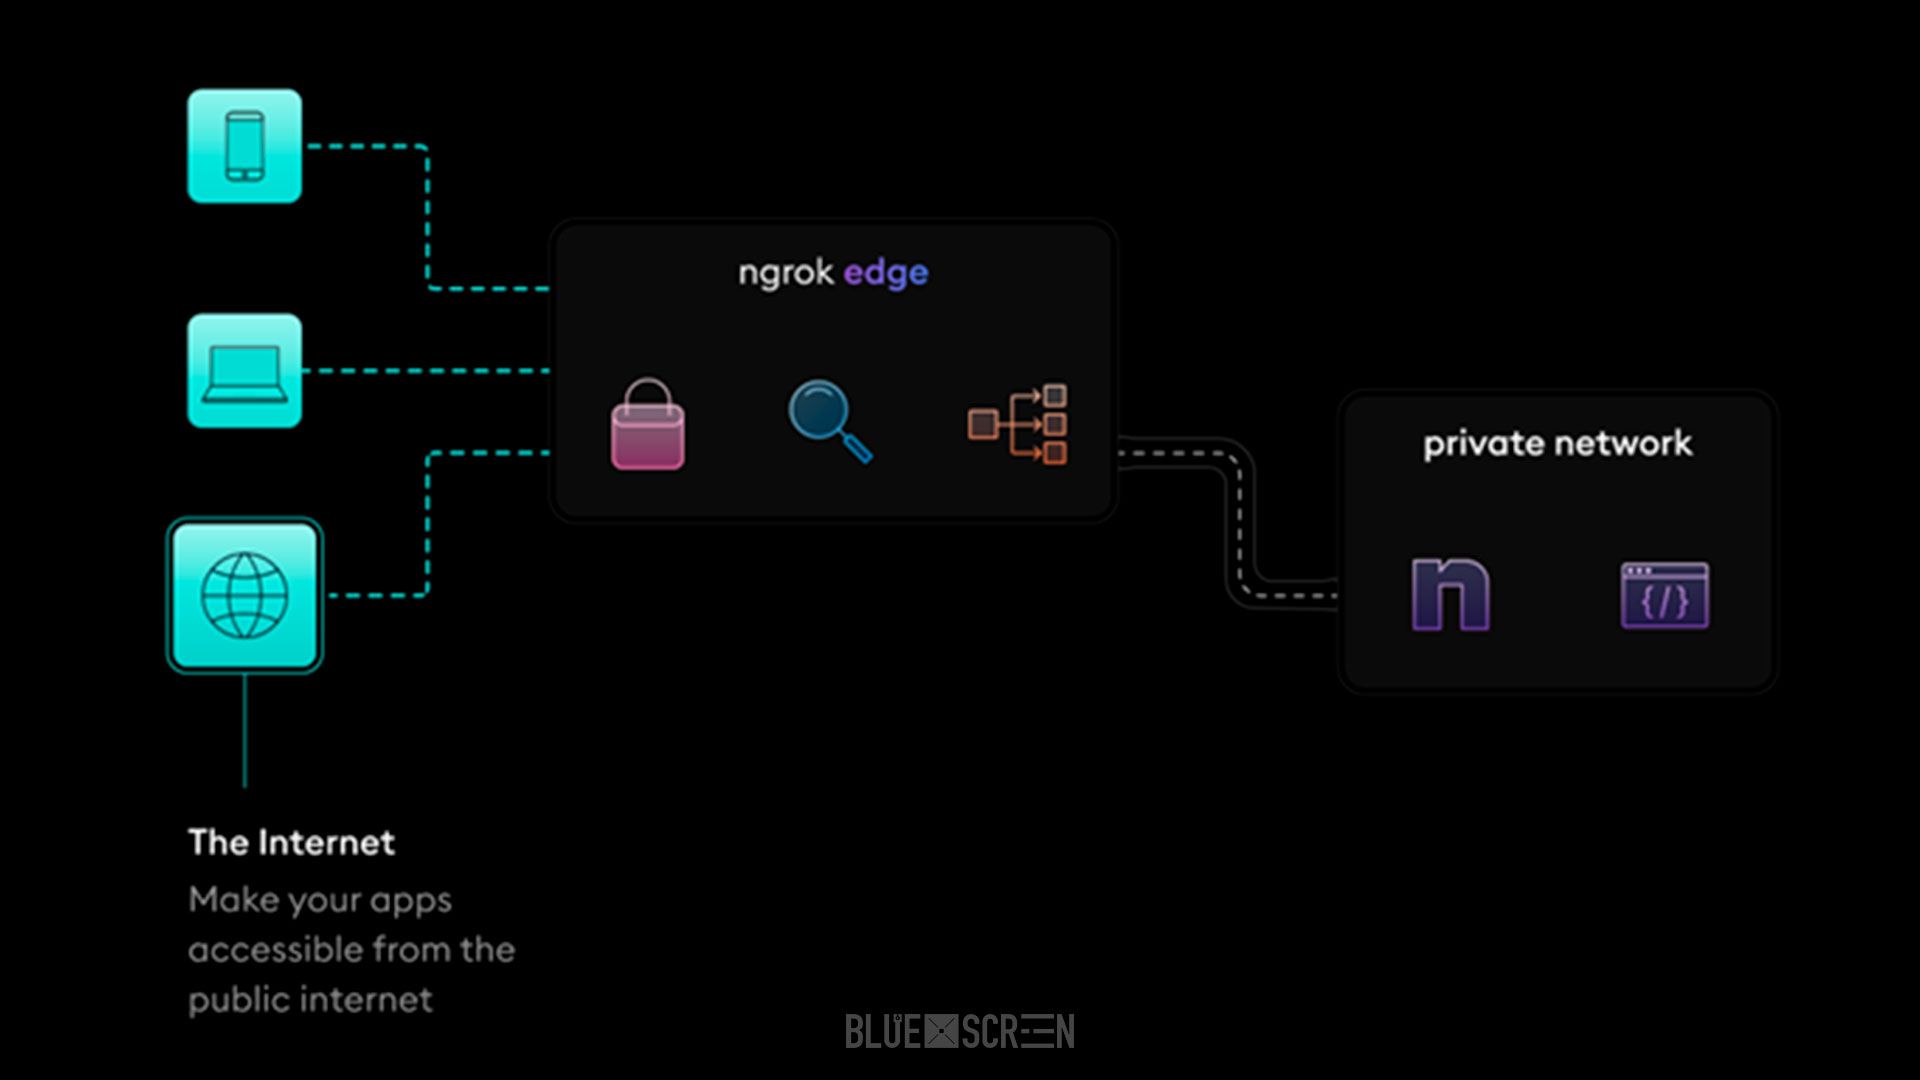  Схема работы сервиса туннелирования на примере ngrok.